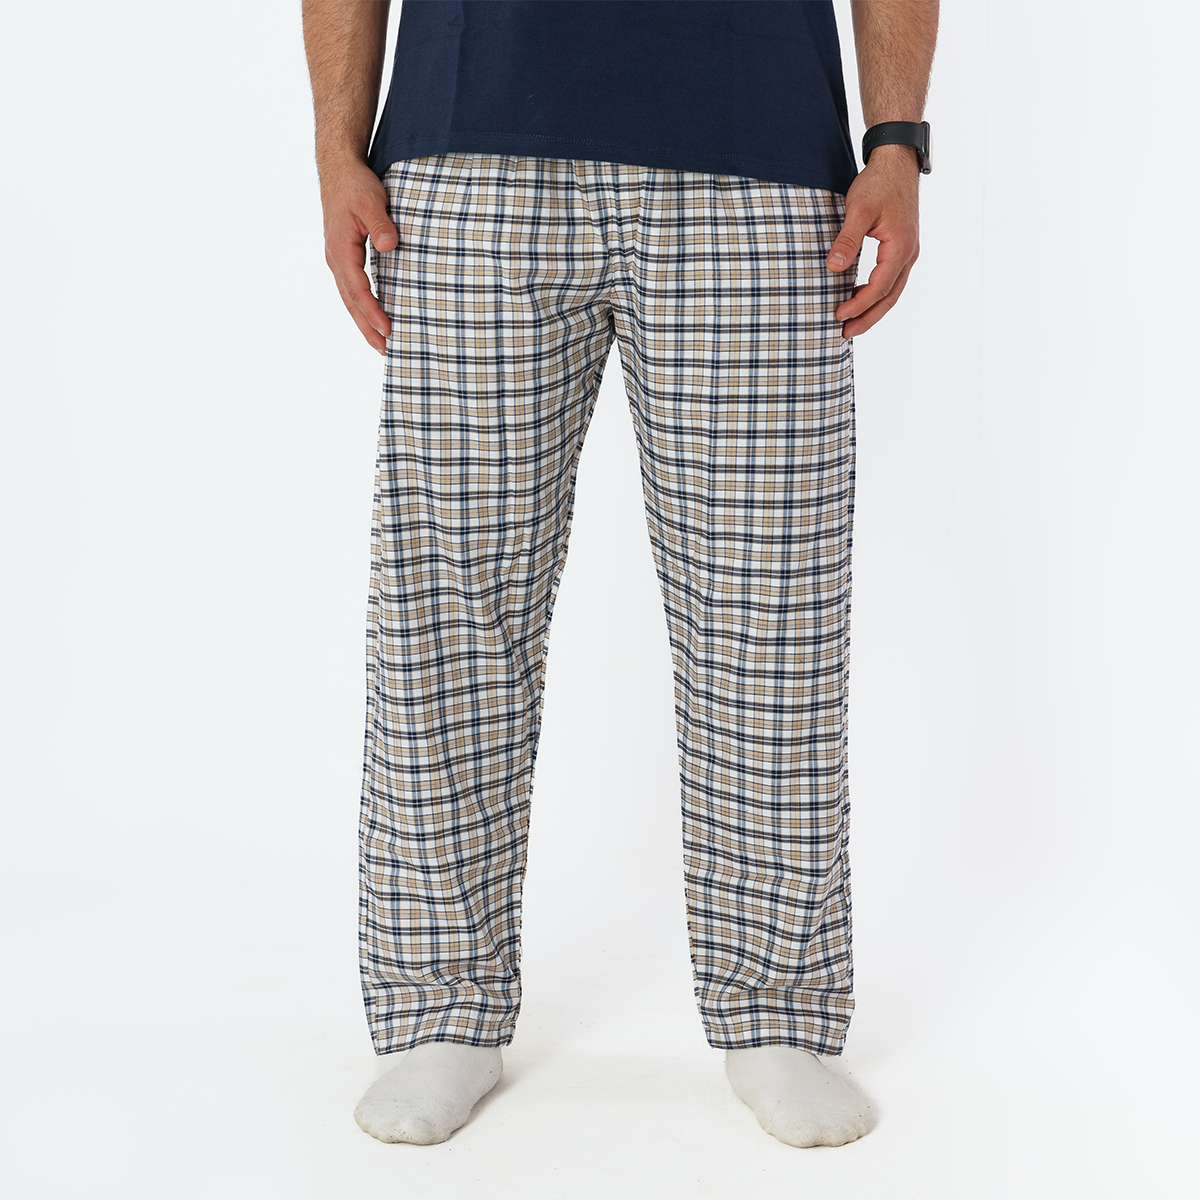 Beige Plaid Pyjama Pants set